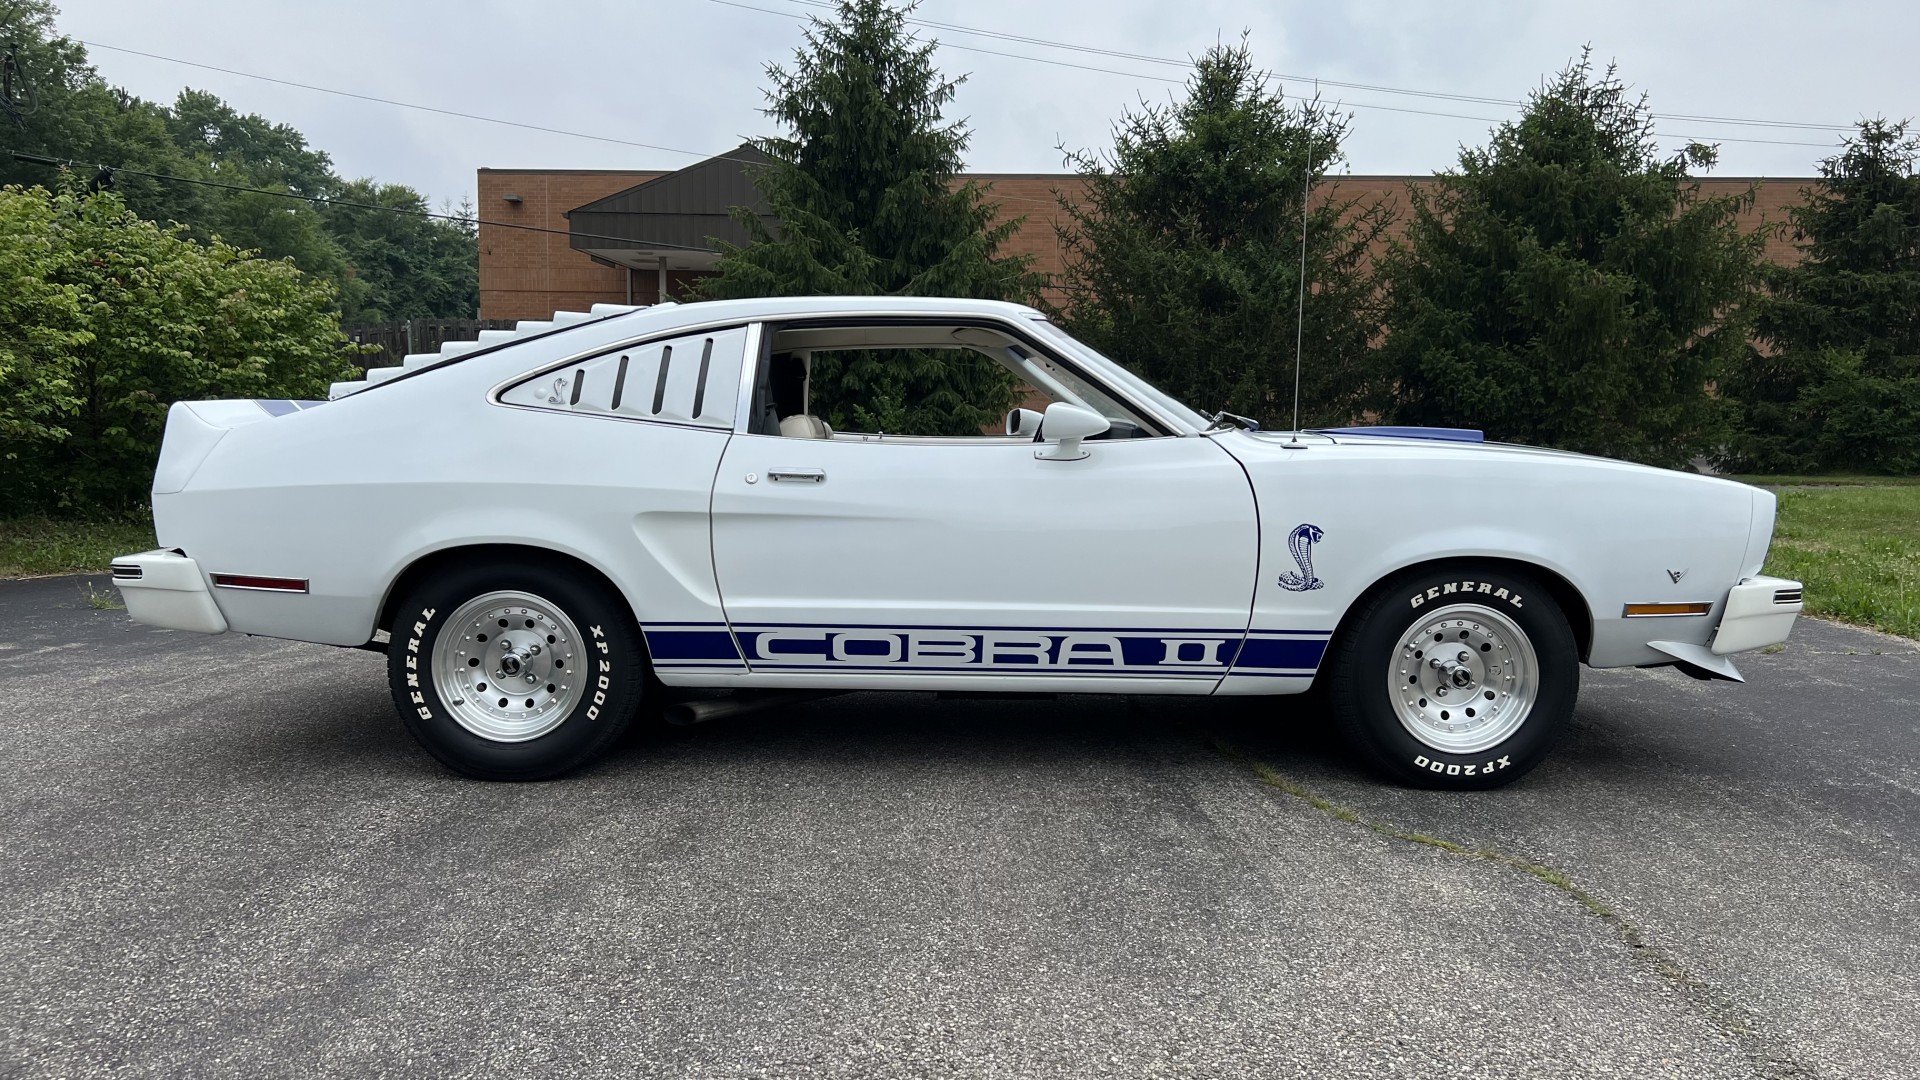 1978 Mustang Cobra II, Restored, Auto, 302, Sold!